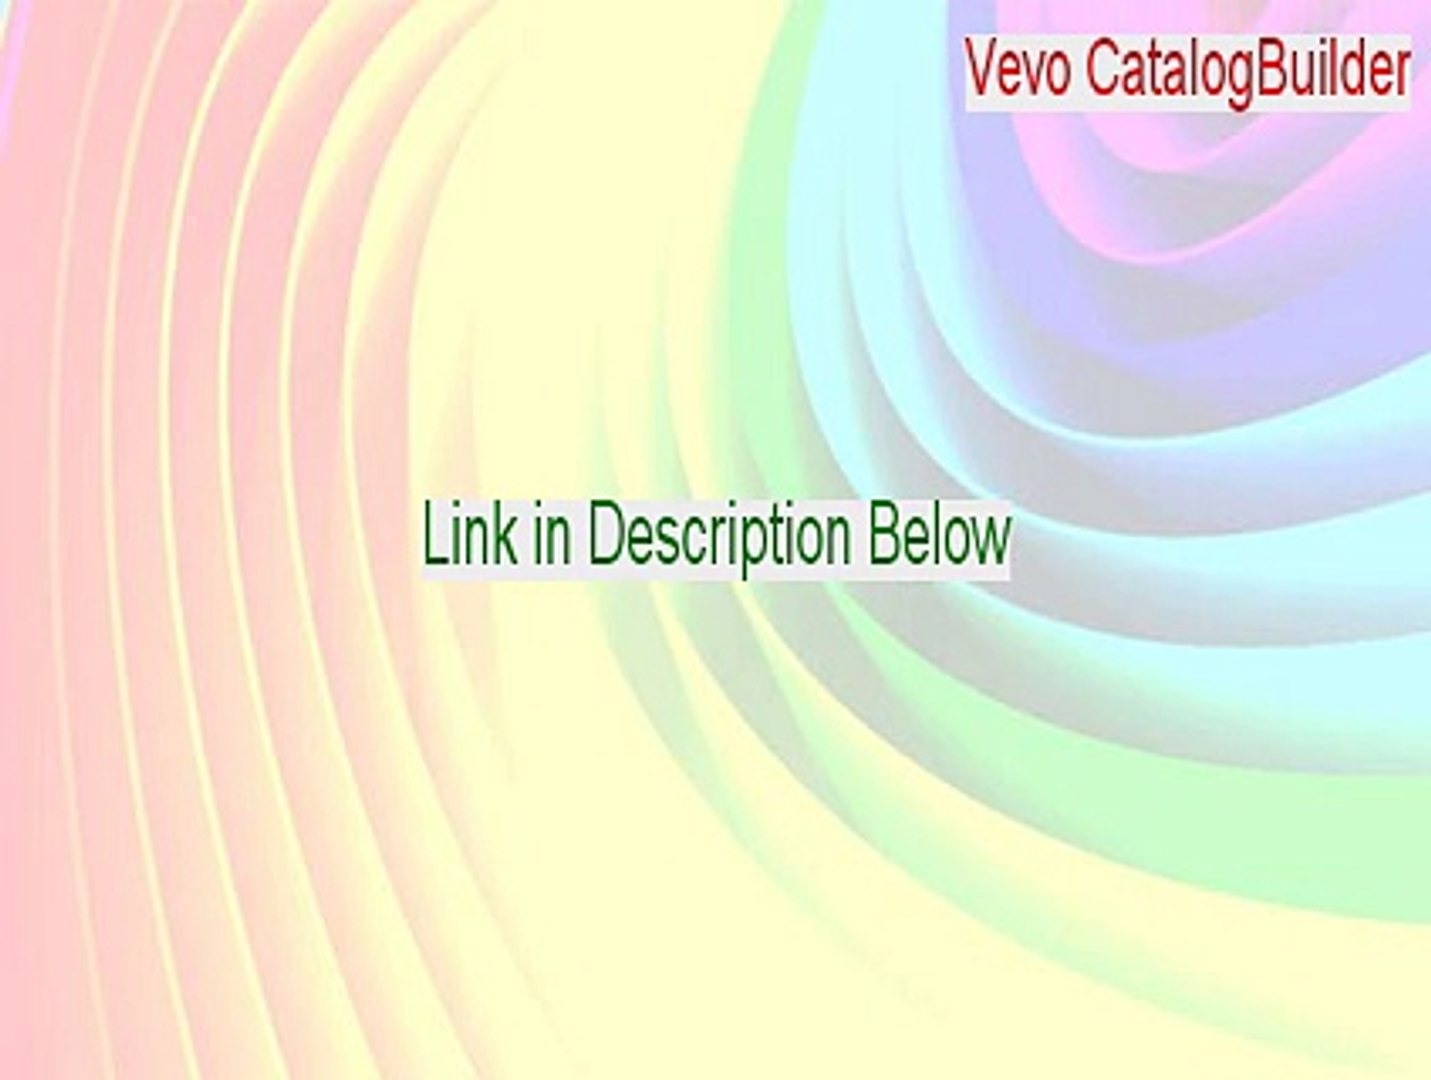 Vevo CatalogBuilder Free Download (vevo catalogbuilder 3.12 crack 2015)